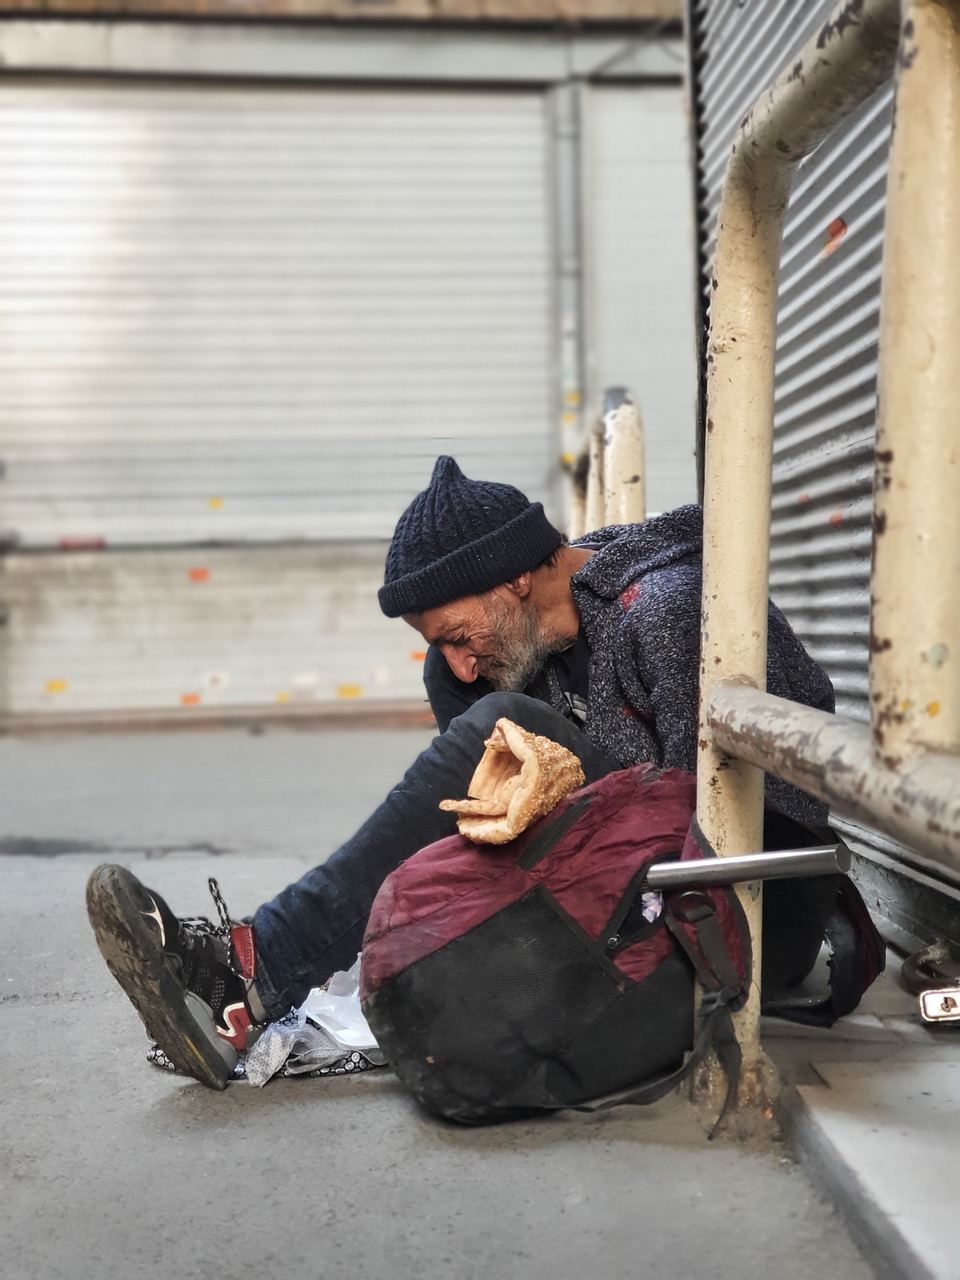 Eine obdachlose Person, die auf dem Boden sitzt | Quelle: Pixabay